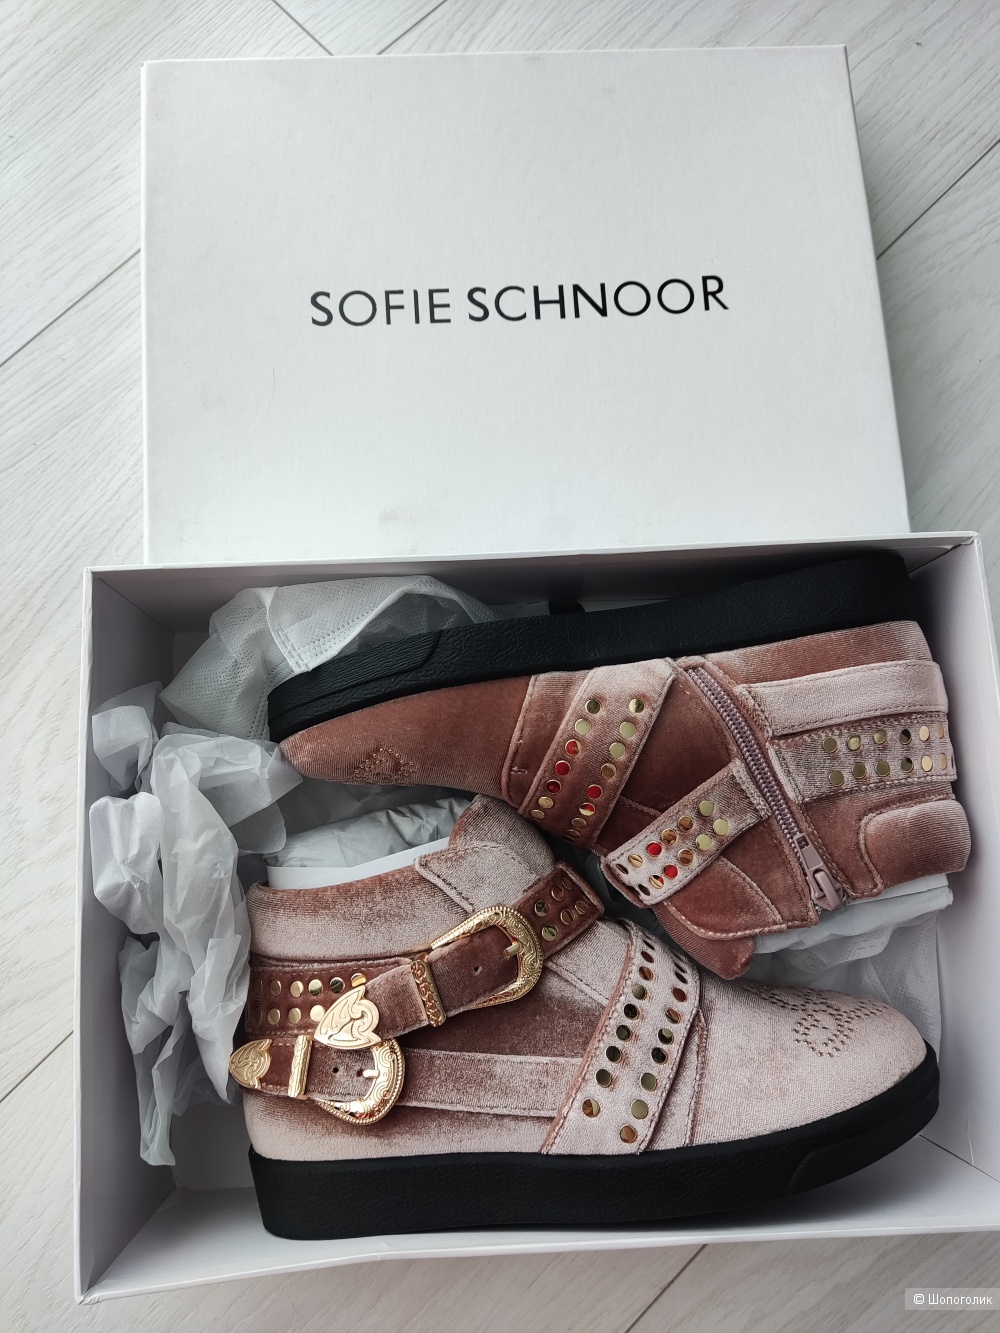 Ботинки Sofie schnoor, 36